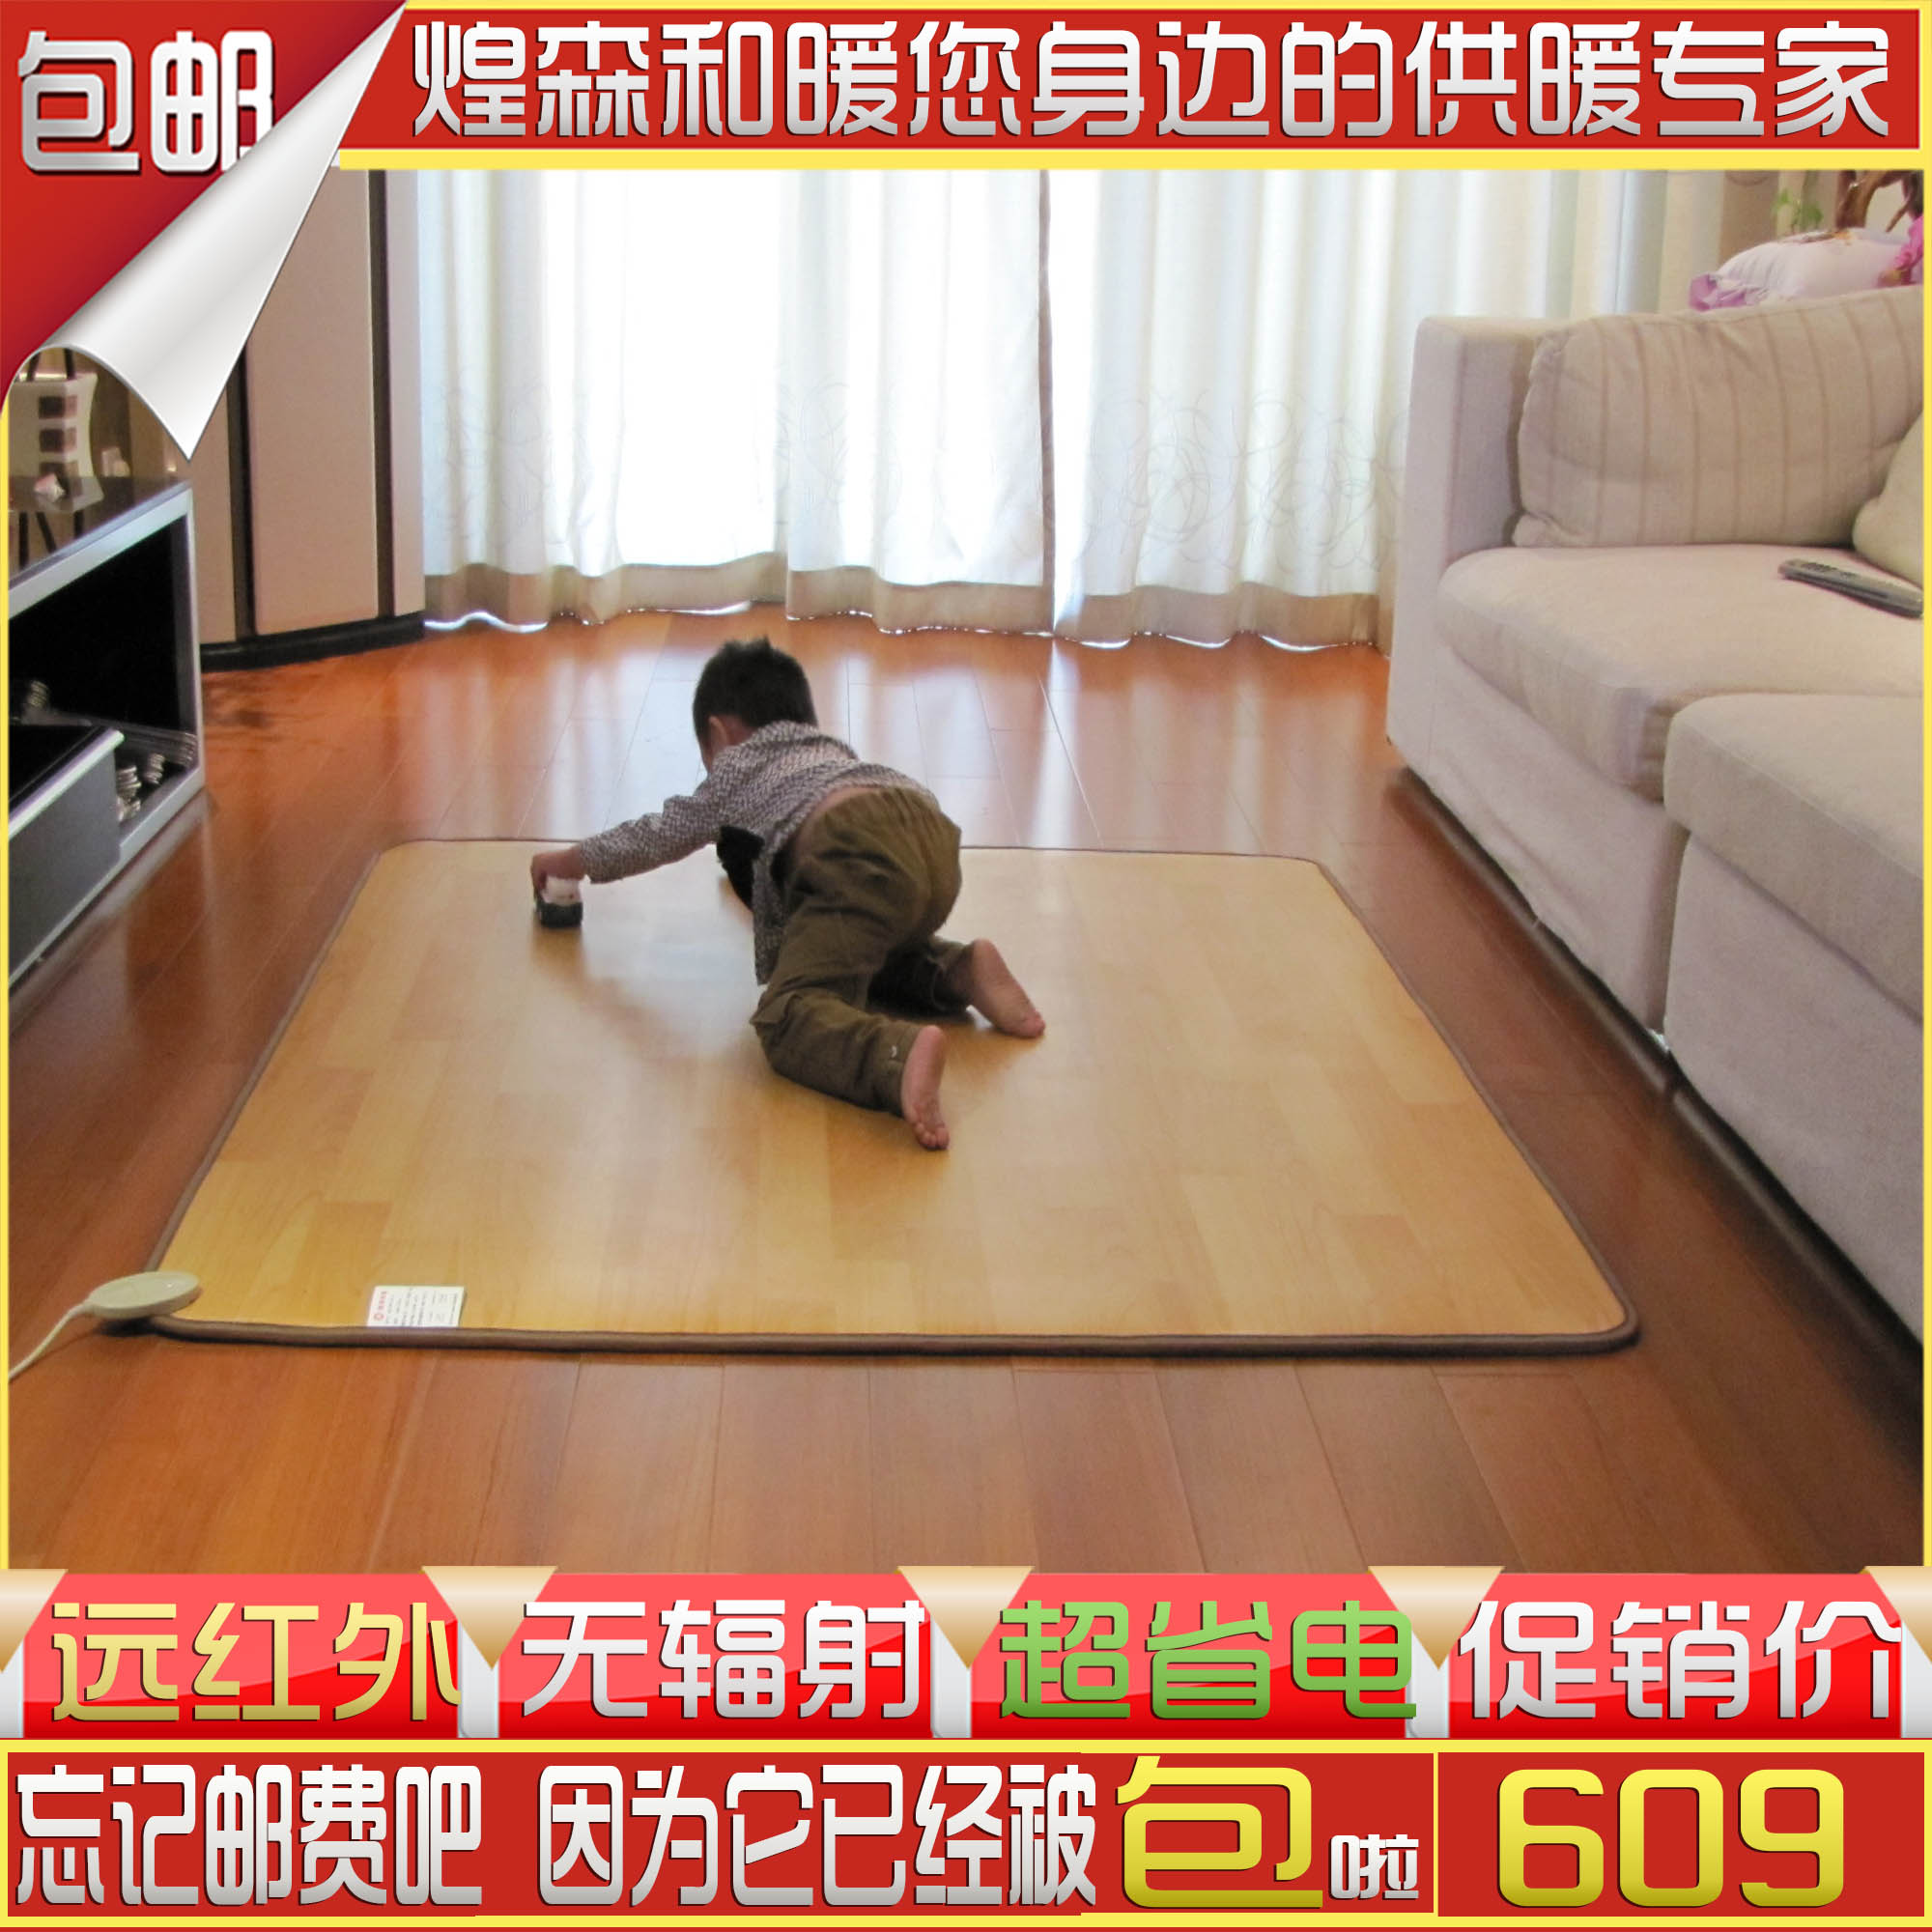 韩国碳晶地暖垫 电热地毯 电热垫 榻榻米 地暖垫 电热毯100*100折扣优惠信息